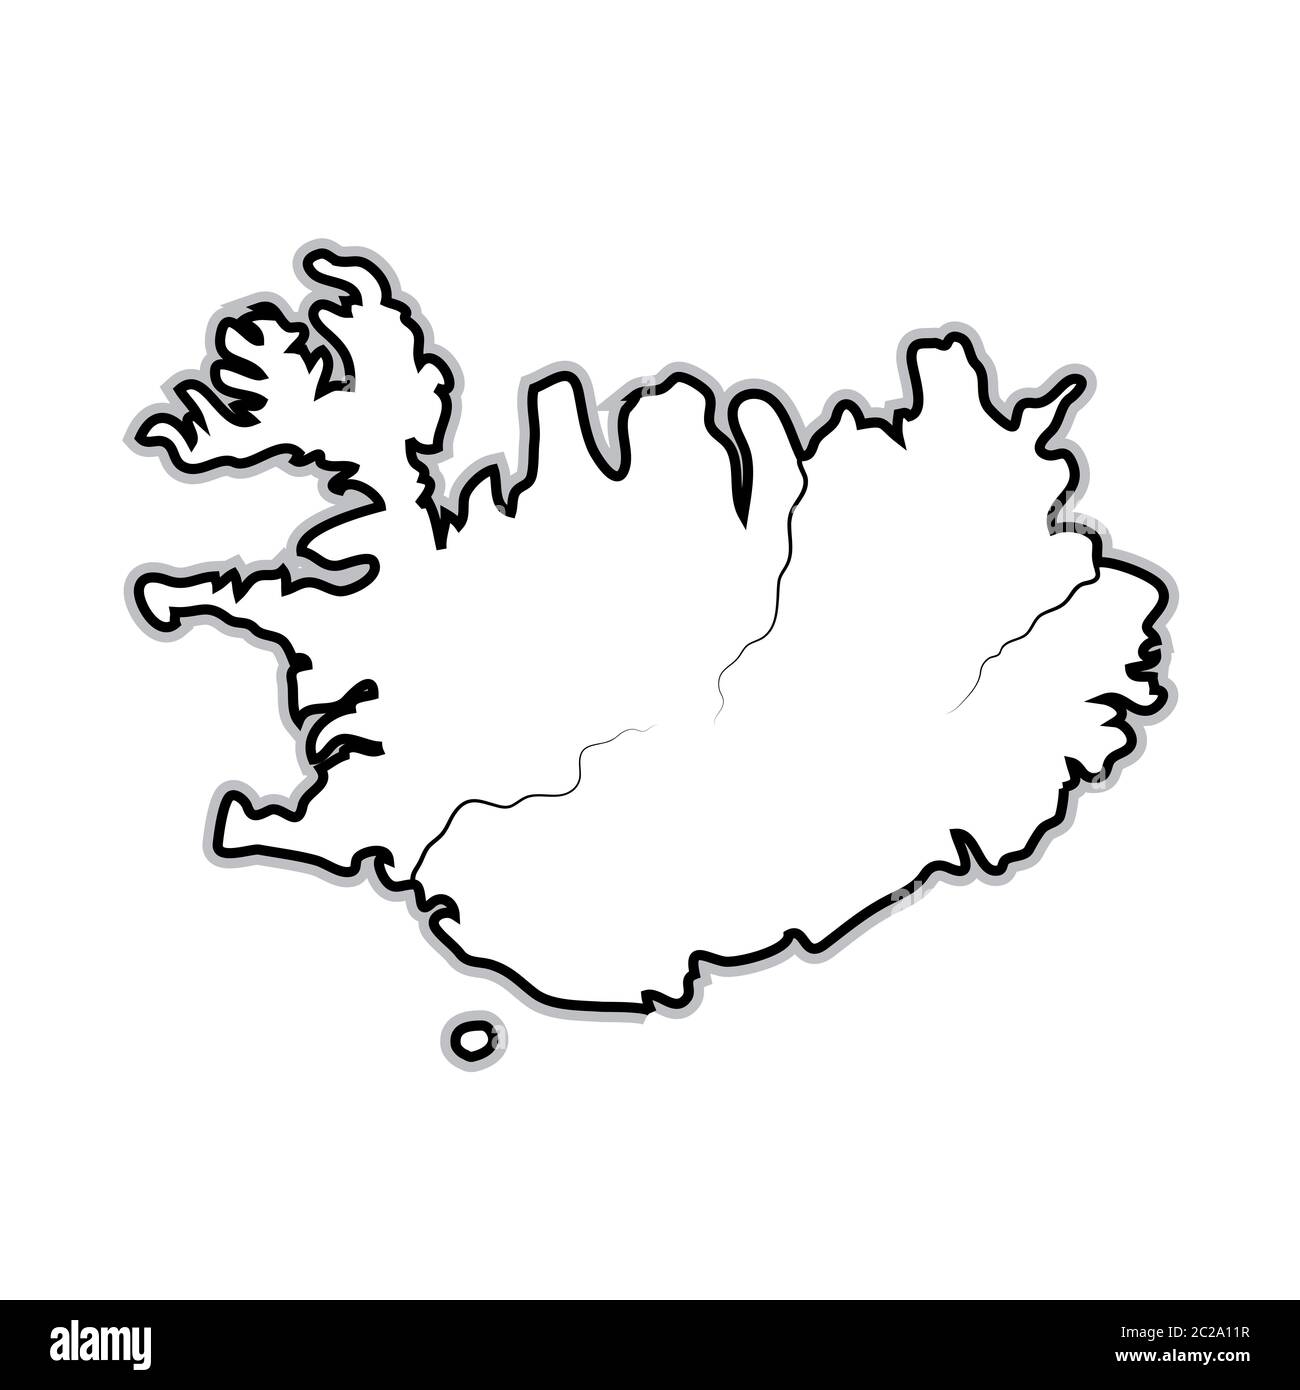 Carte du monde de L'ISLANDE : Islande, Scandinavie, Europe du Nord, Océan Atlantique. Carte géographique. Banque D'Images